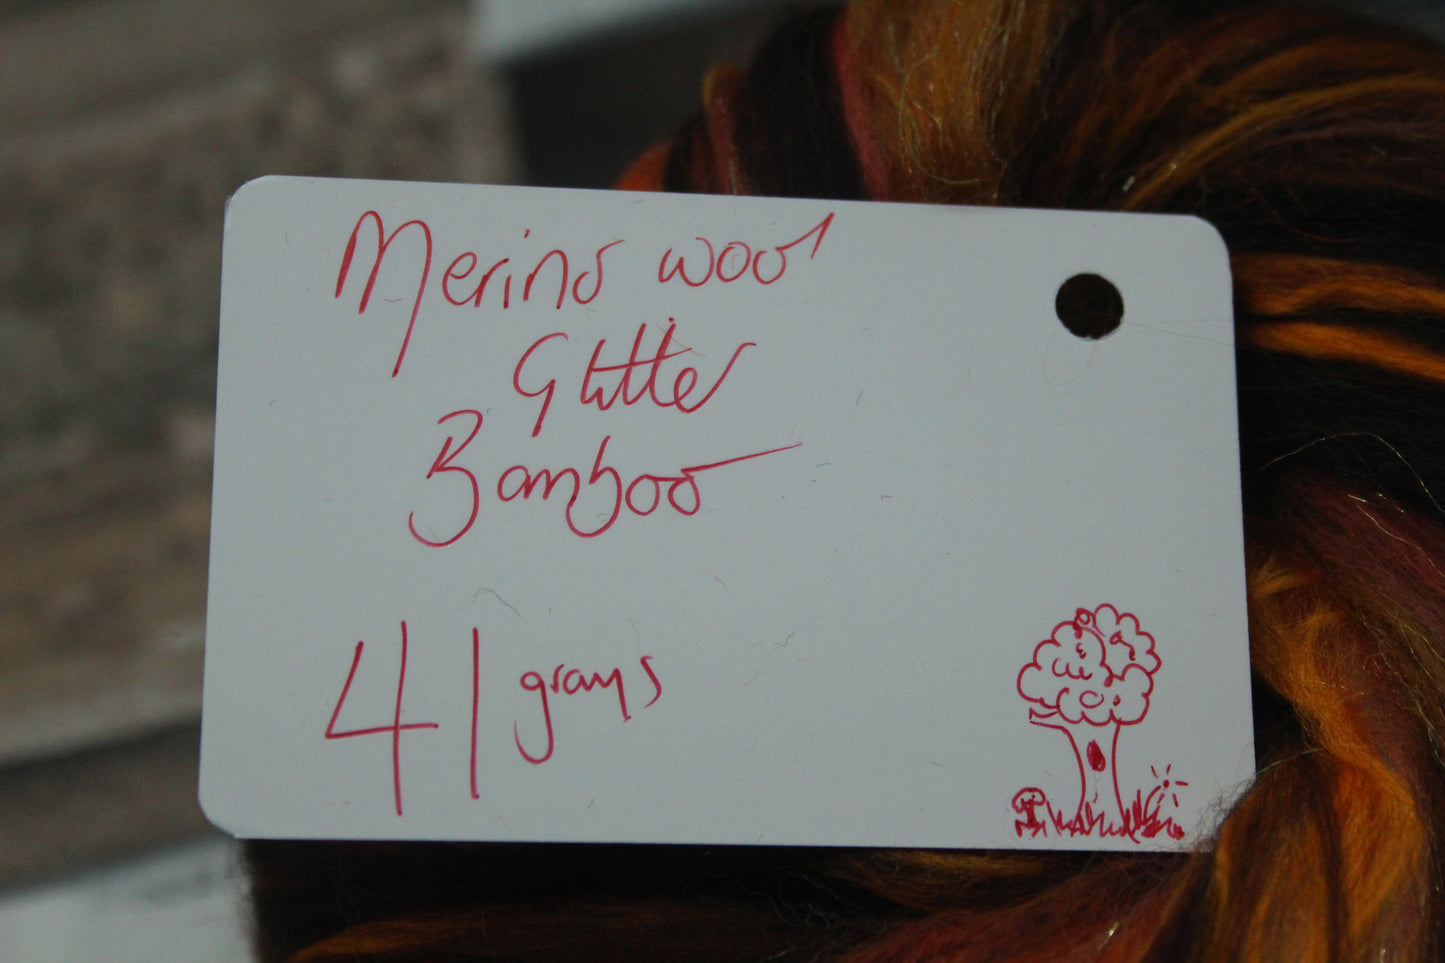 Merino Wool Blend - Brown Orange - 41 grams / 1.4 oz  - Fibre for felting, weaving or spinning